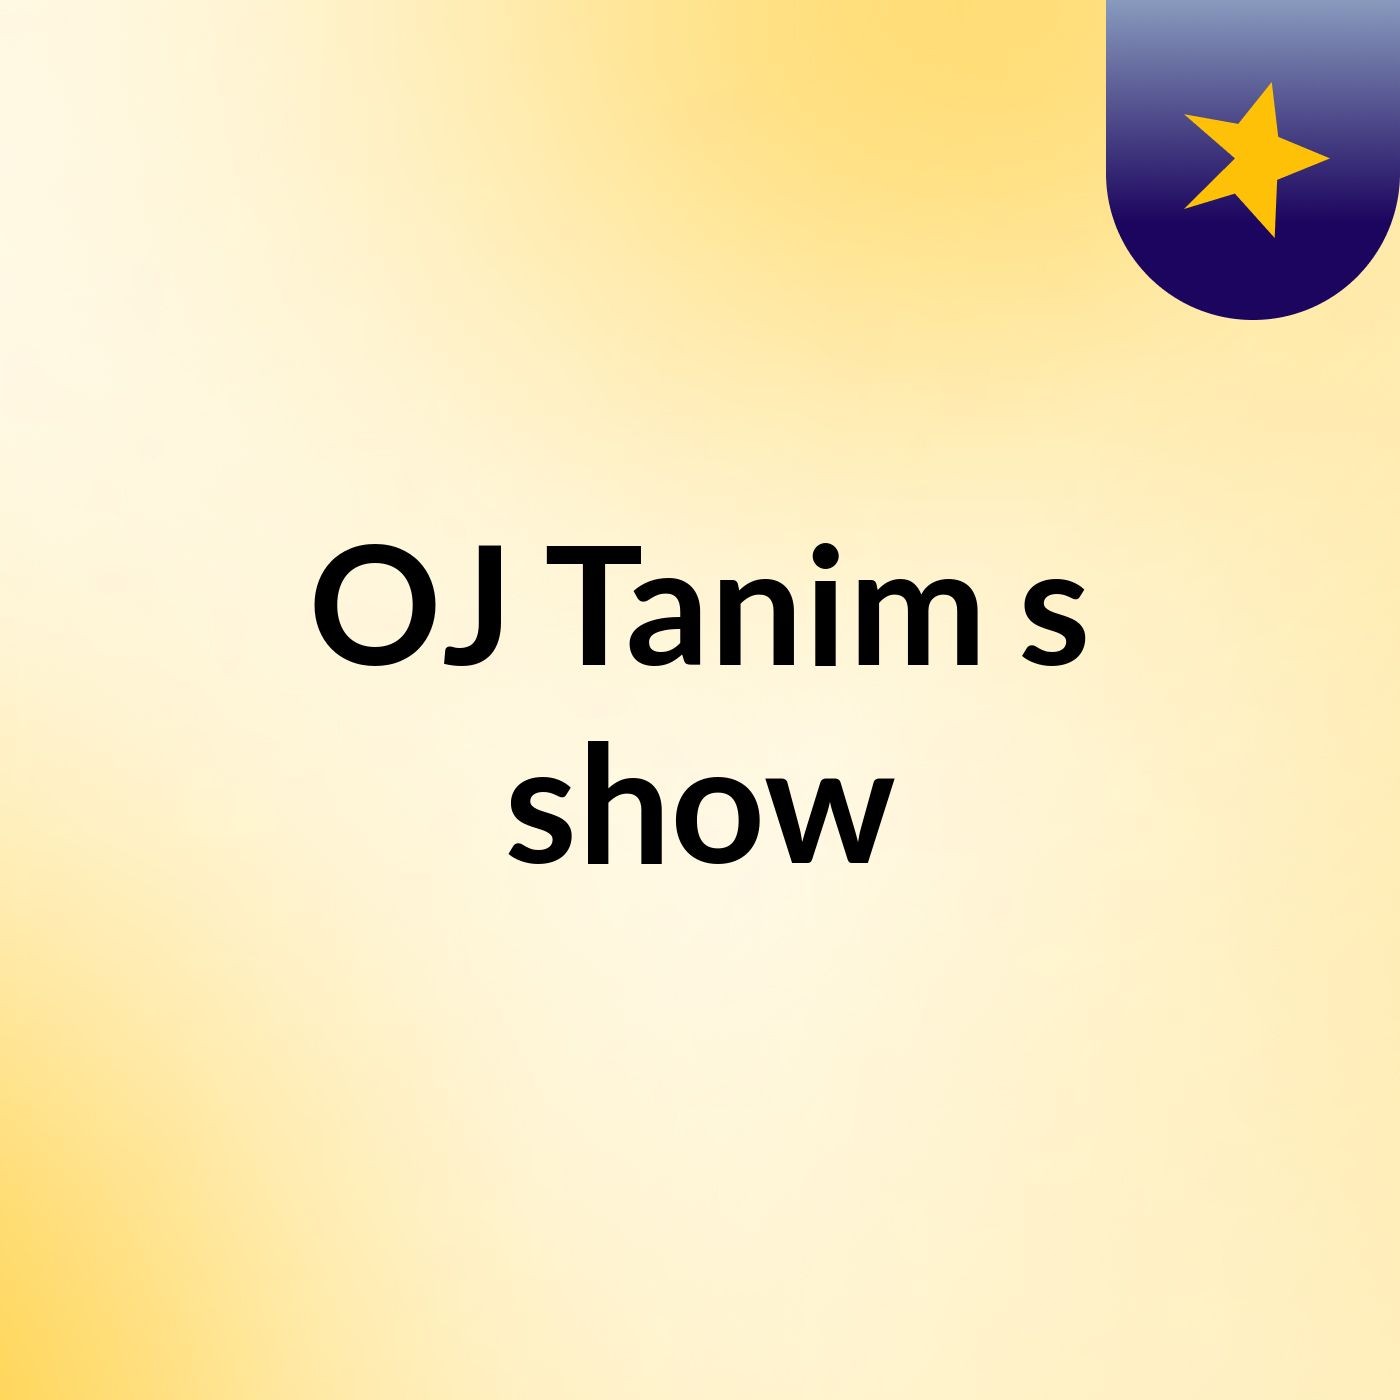 OJ Tanim's show